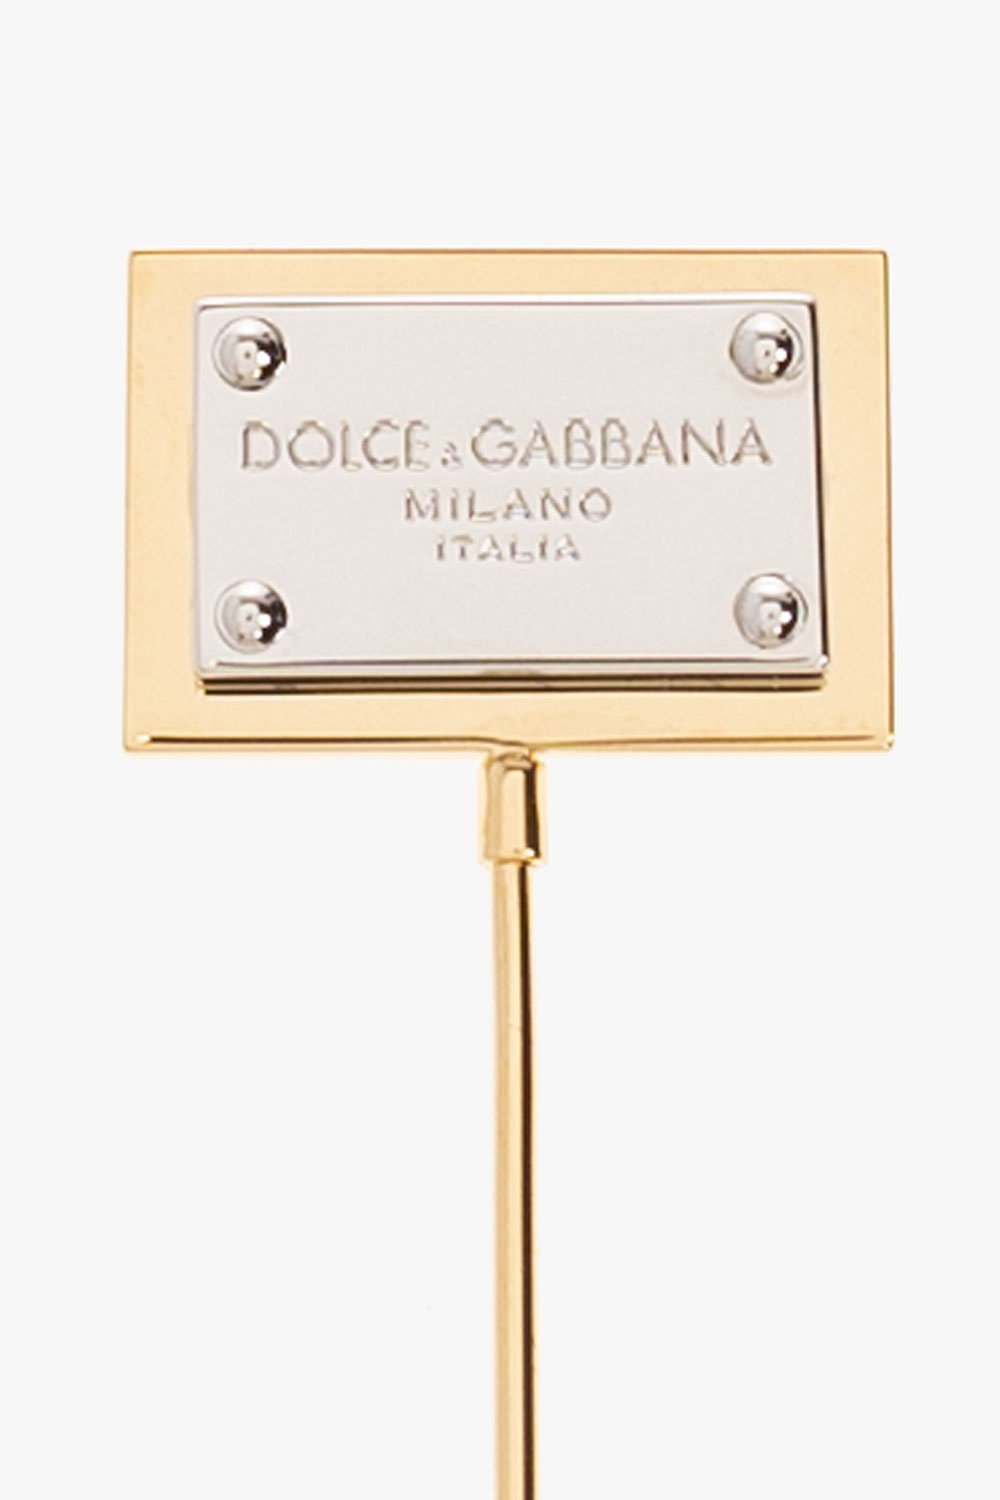 Dolce & Gabbana Dolce & Gabbana wool duffle coat